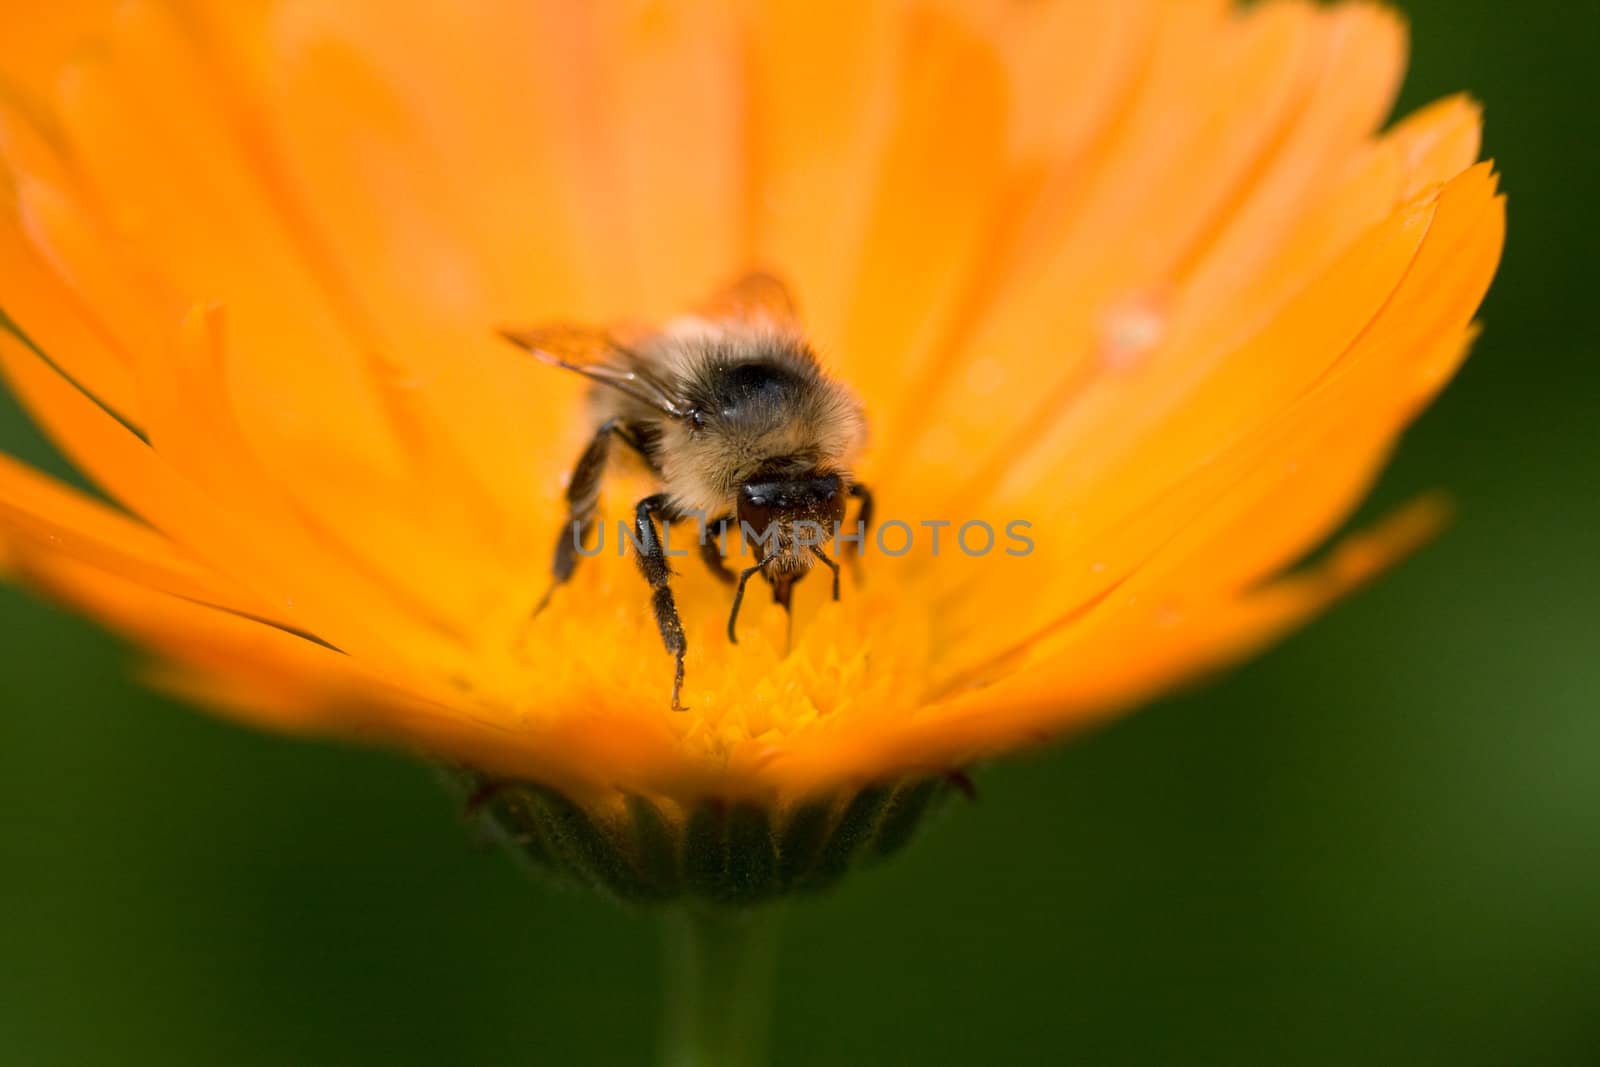 bee on a flower by noblige